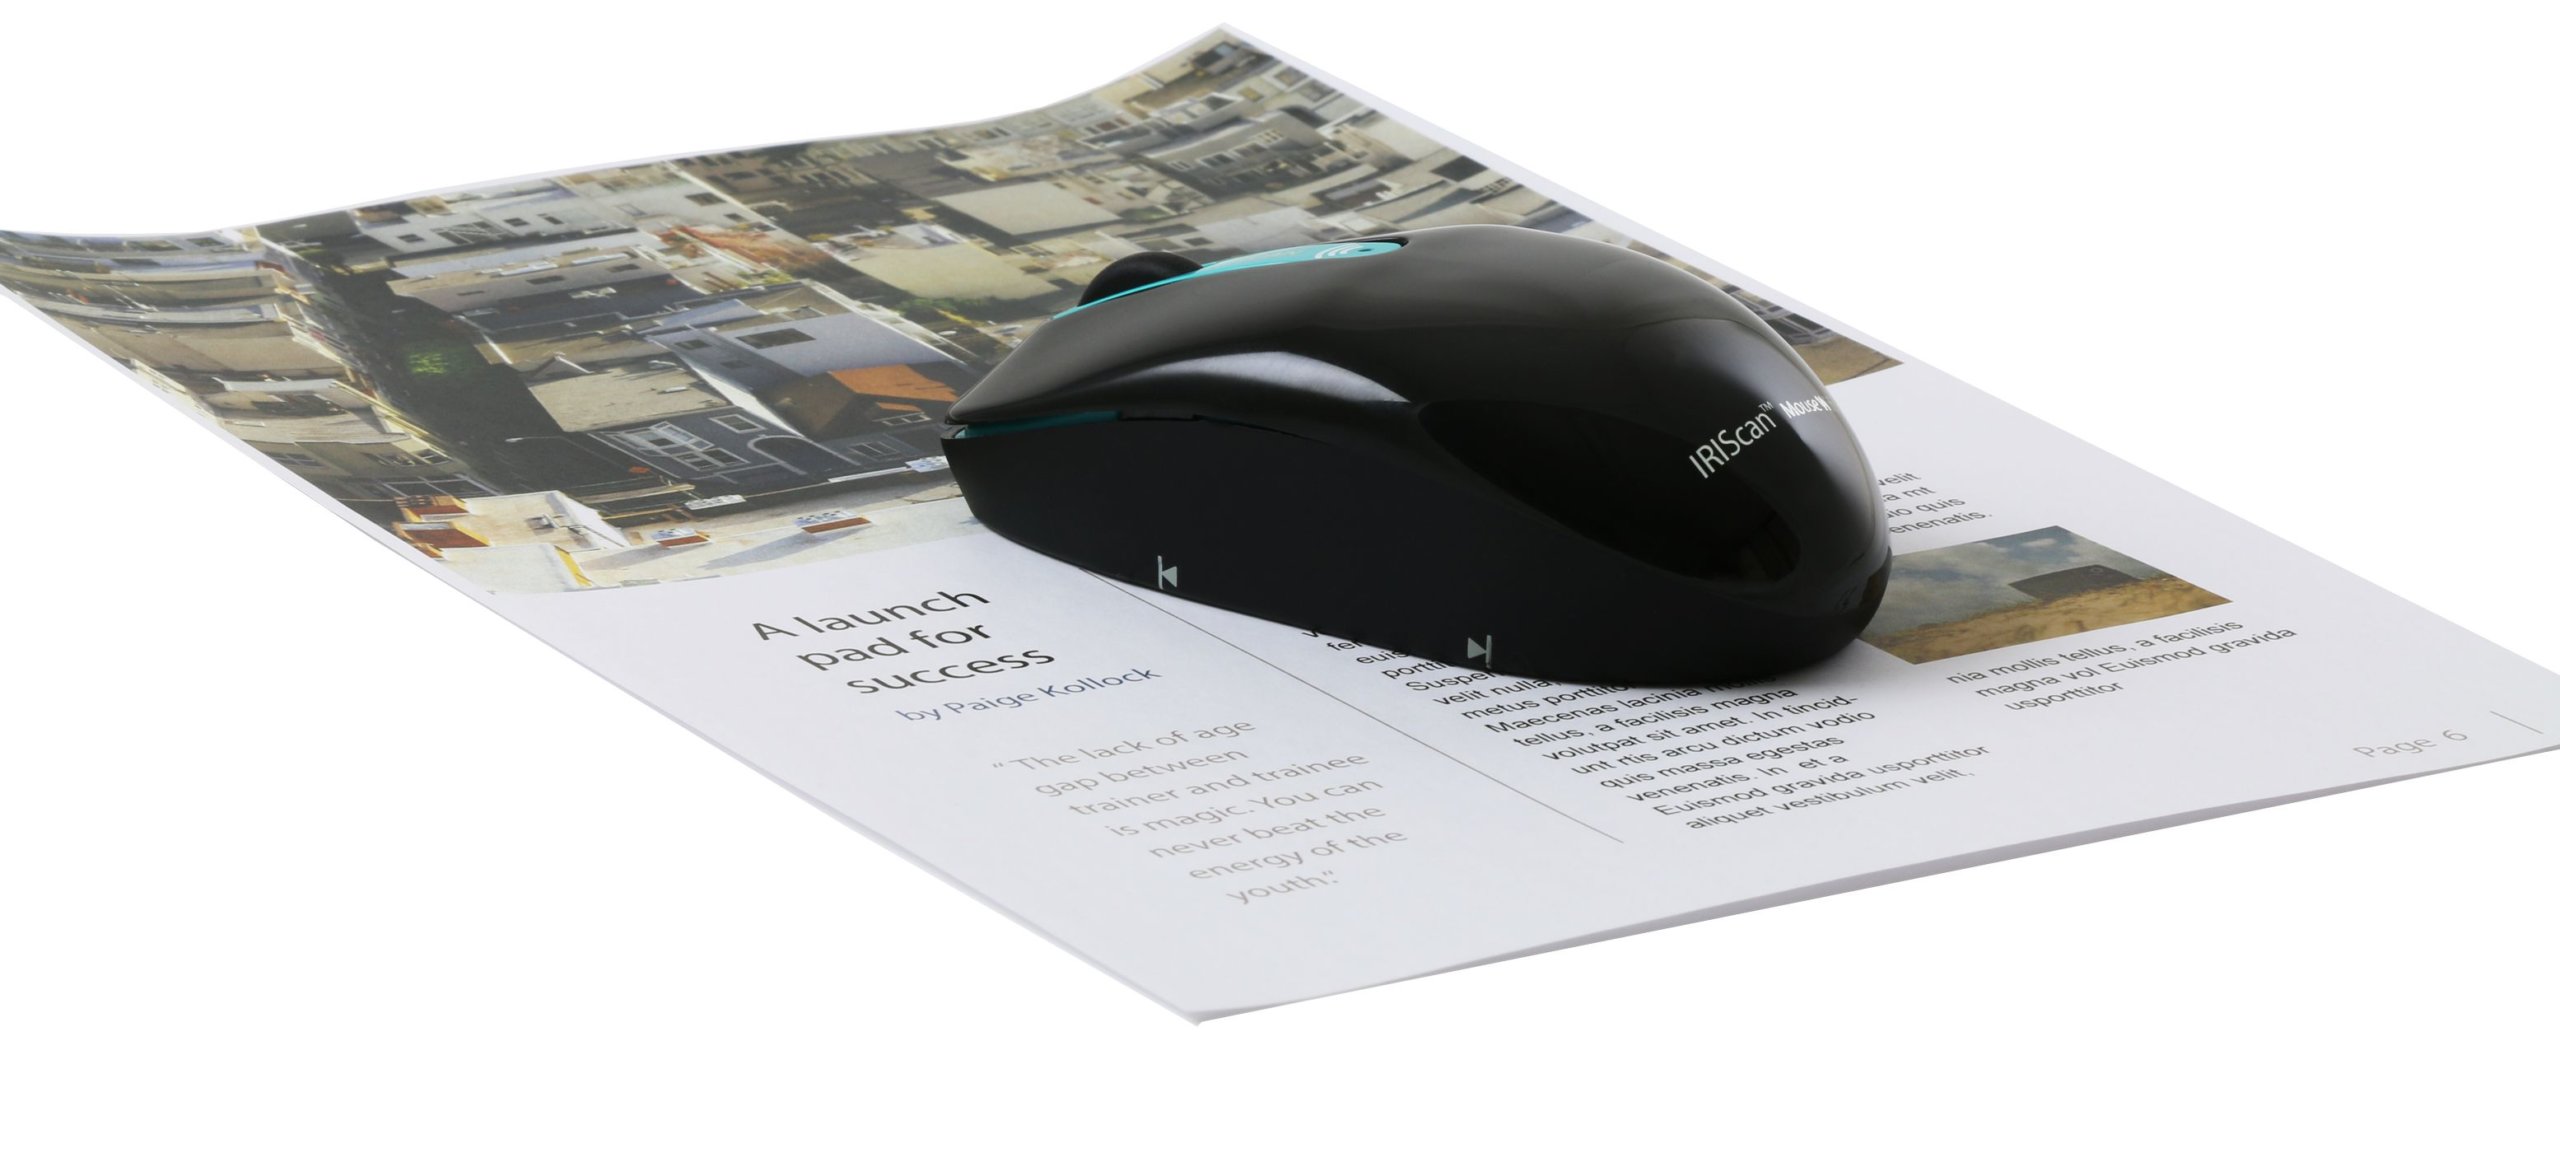 IRIScan Mouse Wifi – myszka, którą zeskanujesz dokumenty